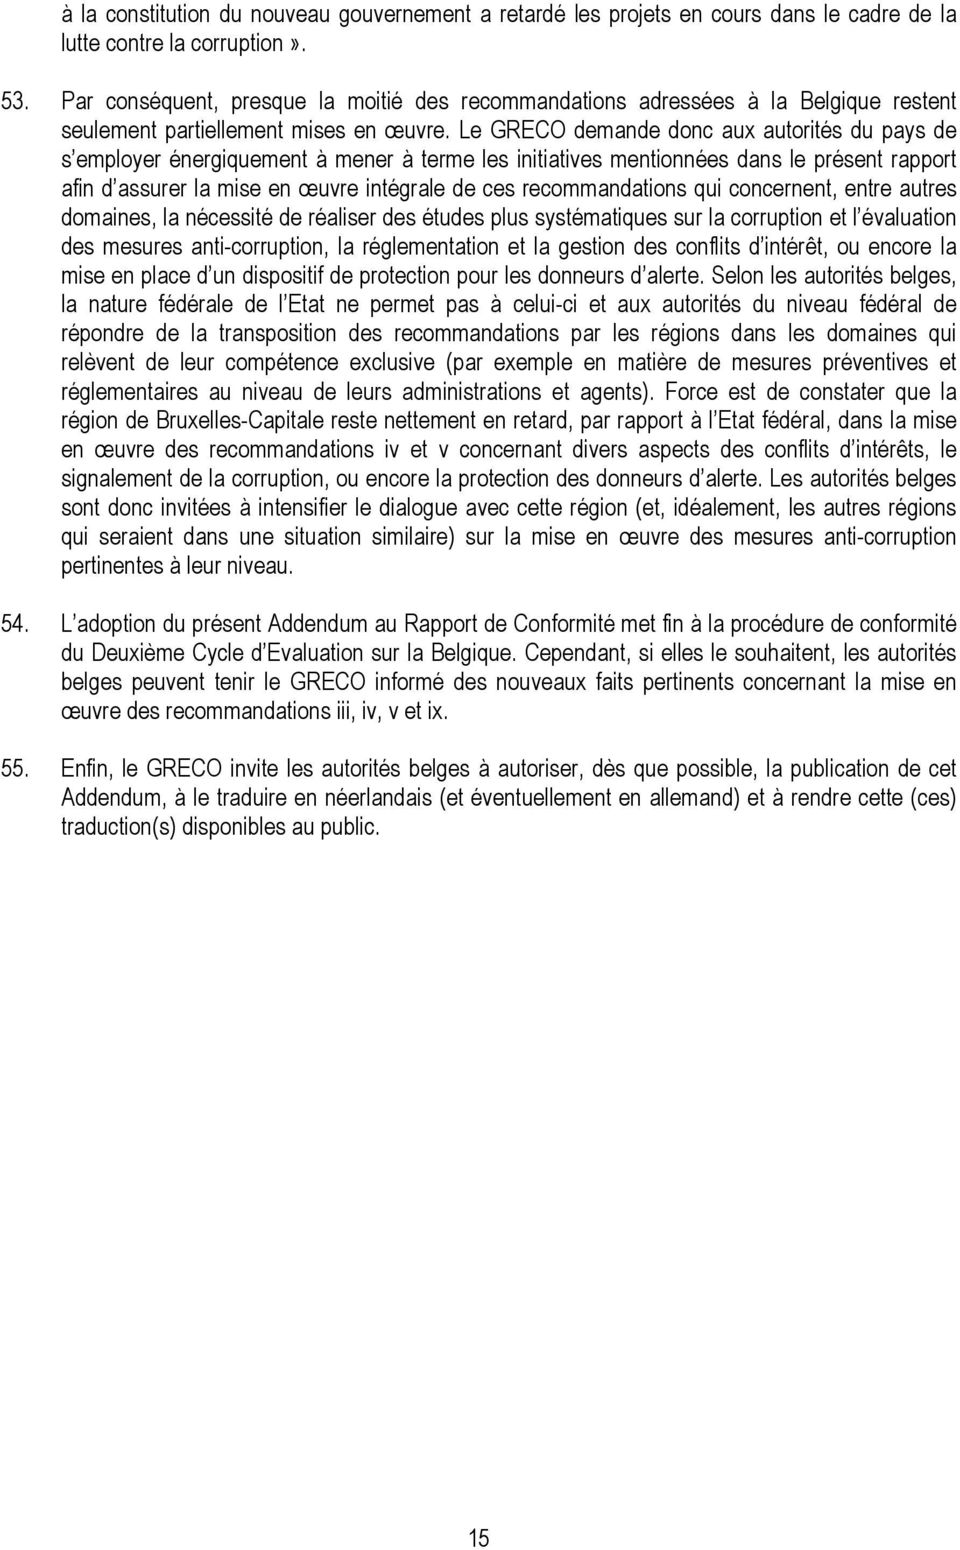 Le GRECO demande donc aux autorités du pays de s employer énergiquement à mener à terme les initiatives mentionnées dans le présent rapport afin d assurer la mise en œuvre intégrale de ces